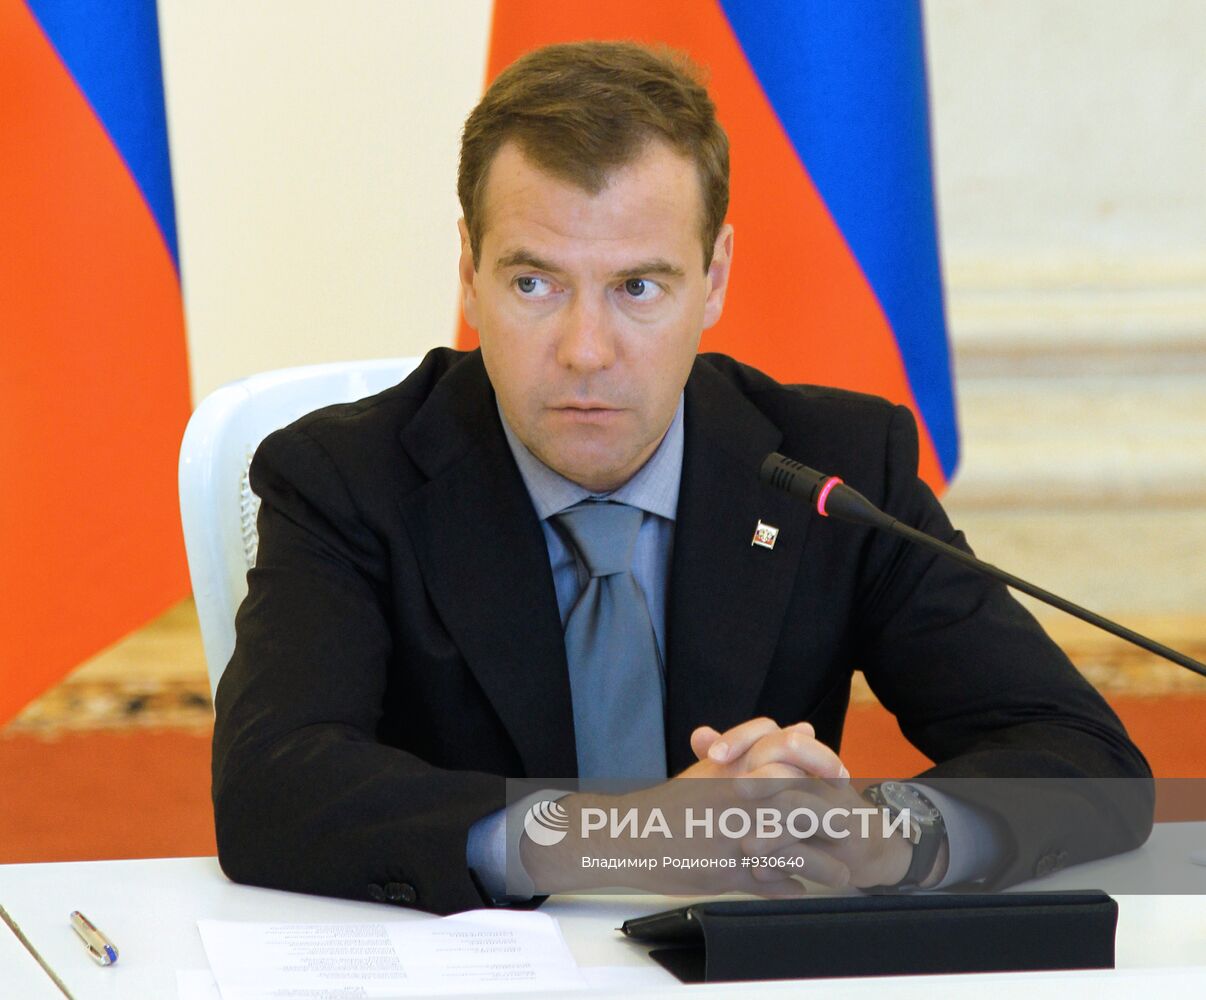 Рабочая поездка Дмитрия Медведева в Нальчик